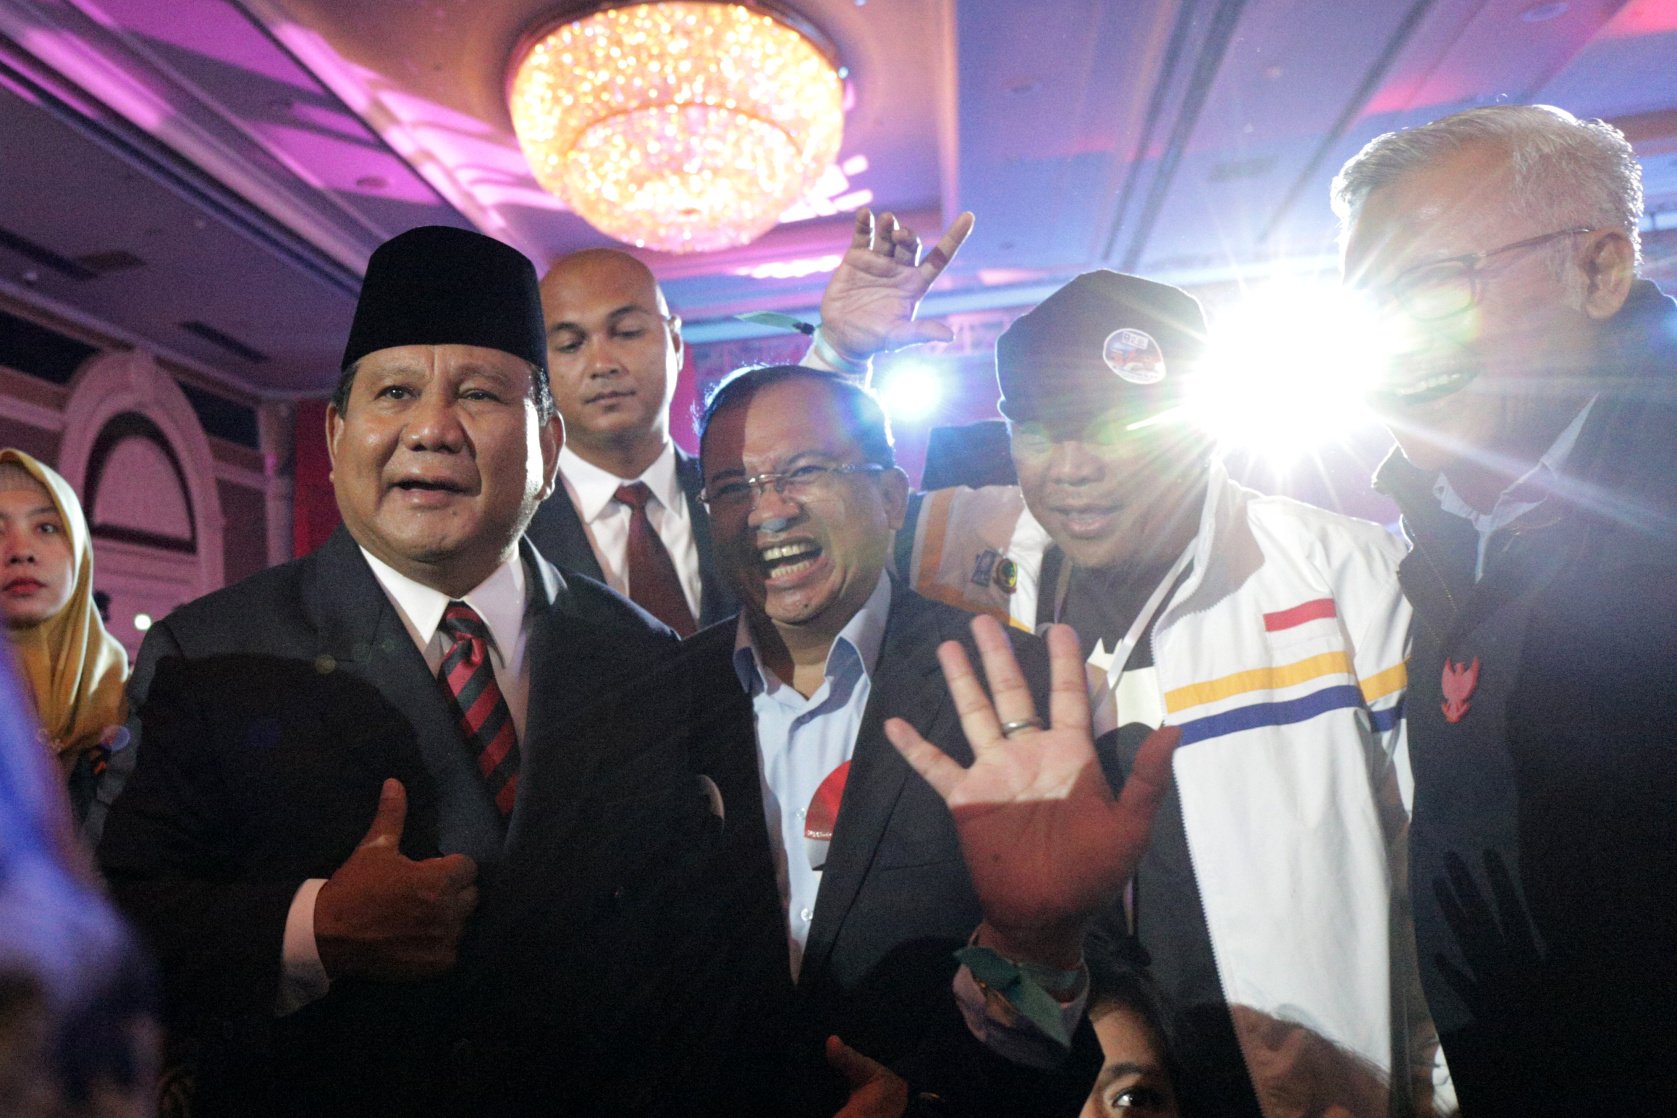 Capres nomor urut 02 Prabowo Subianto bersama pendukung saat mengikuti Debat Capres Putaran Keempat di Hotel Shangri-La, Jakarta, Sabtu (30/3).Debat Capres ke-4 di Pilpres 2019 mengusung tema \